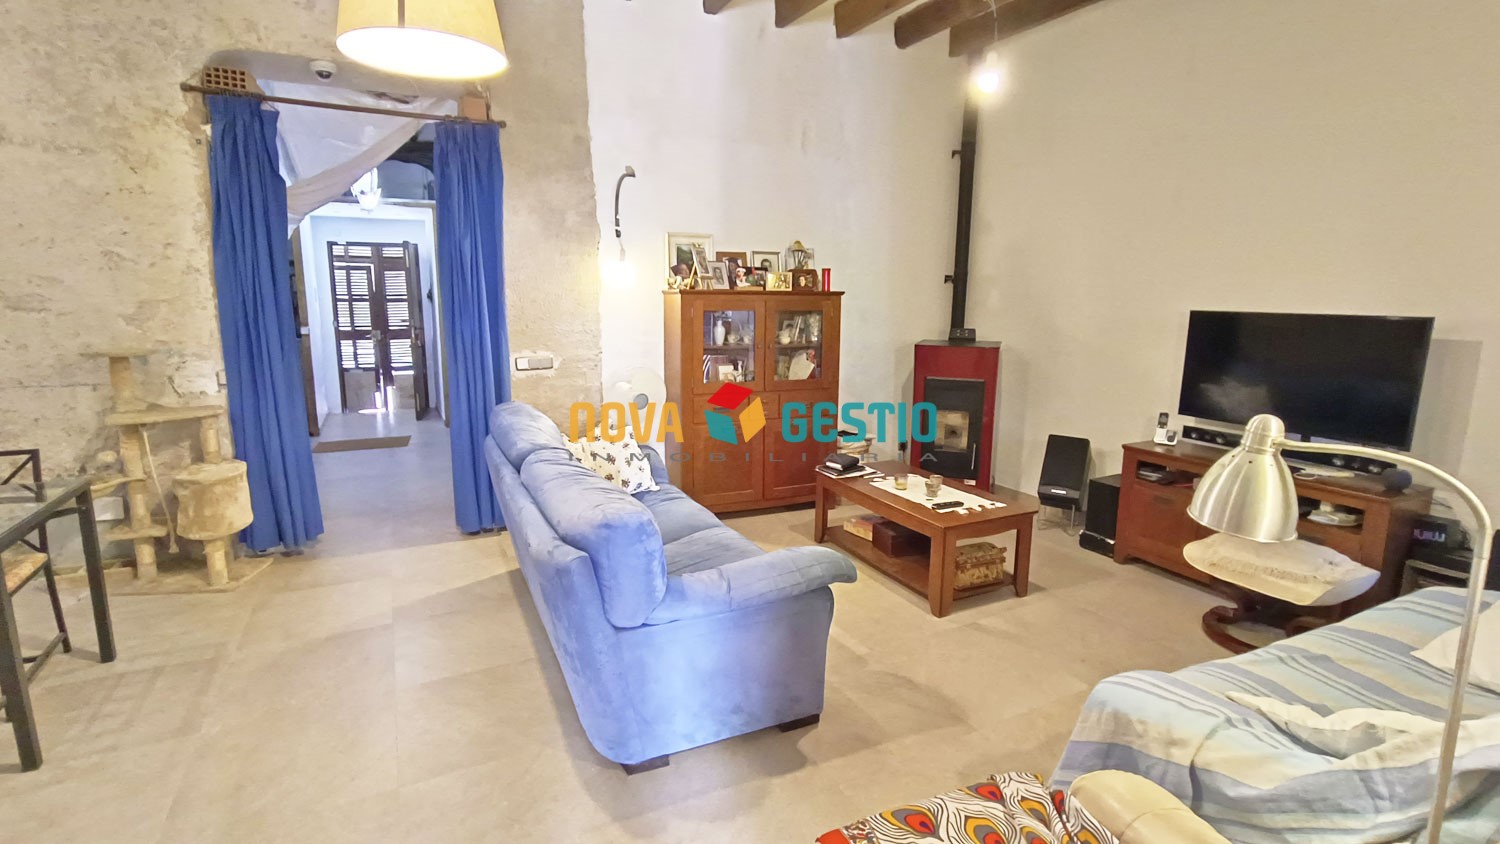 Casa en venta Villafranca : : CA1262MA-VES